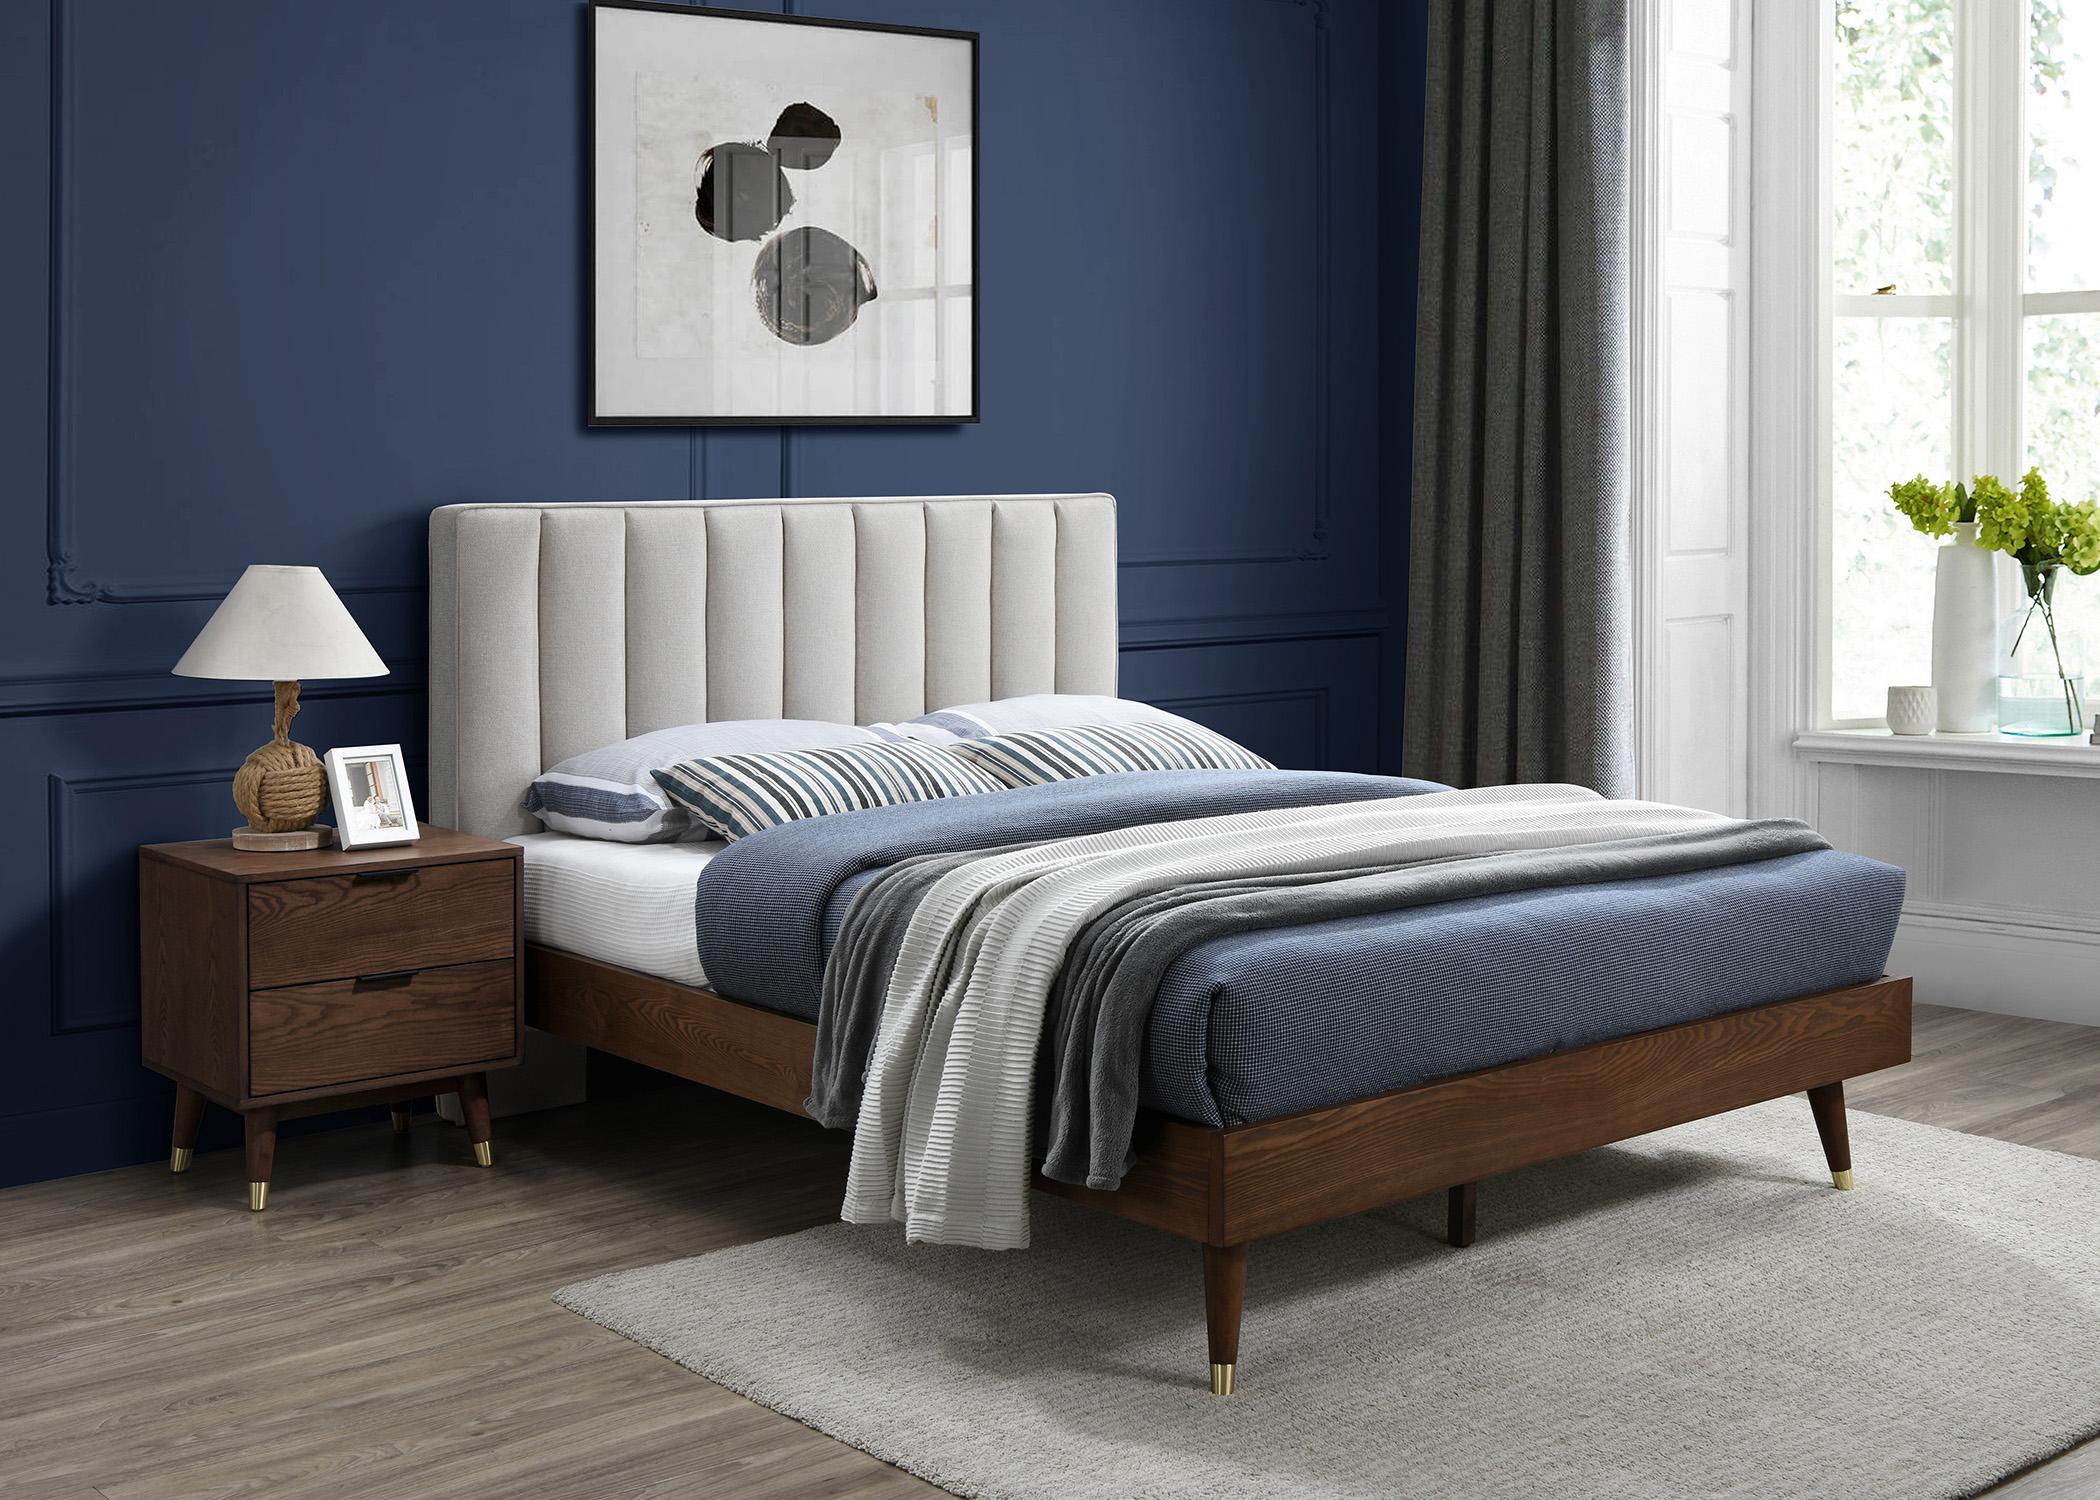 

    
VanceBeige-K Meridian Furniture Platform Bed
